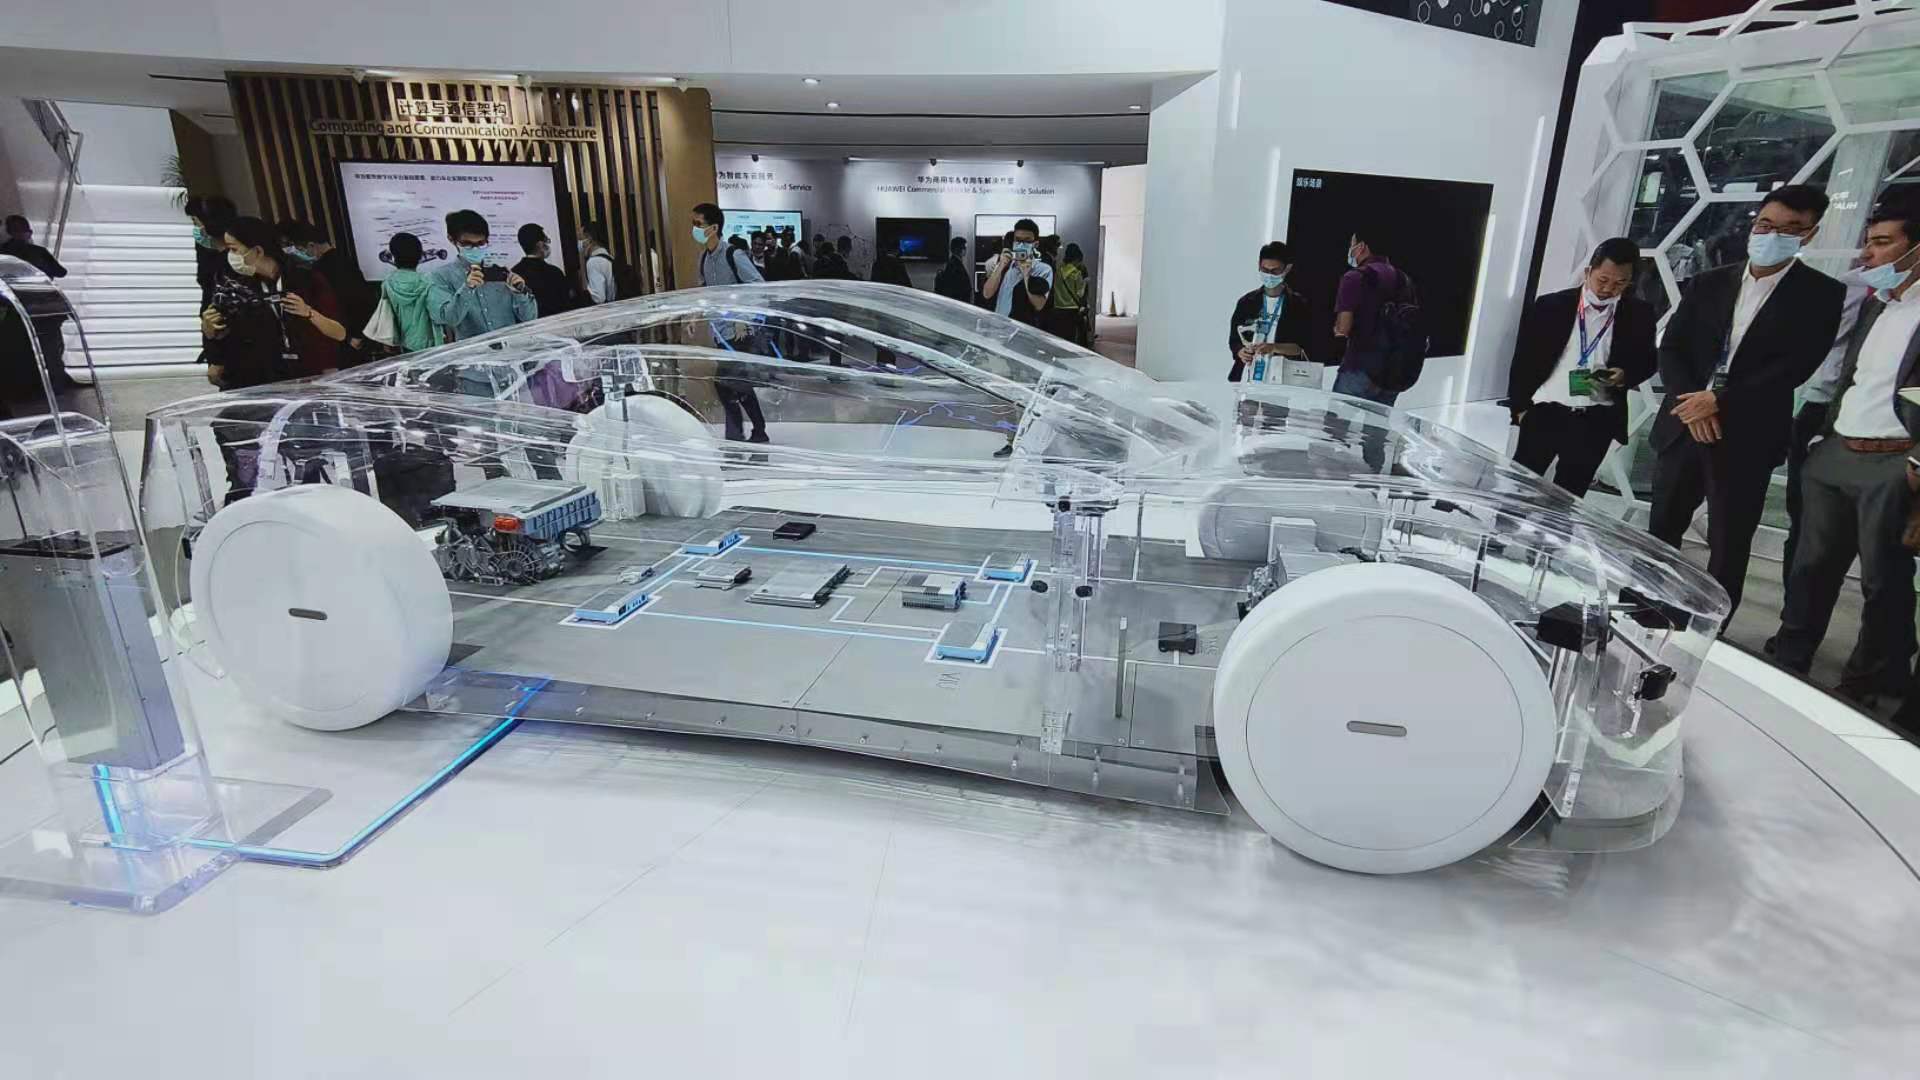 北京现代2015 C级车展 - 展览展示 - 众为国际传播 | Uniway Group